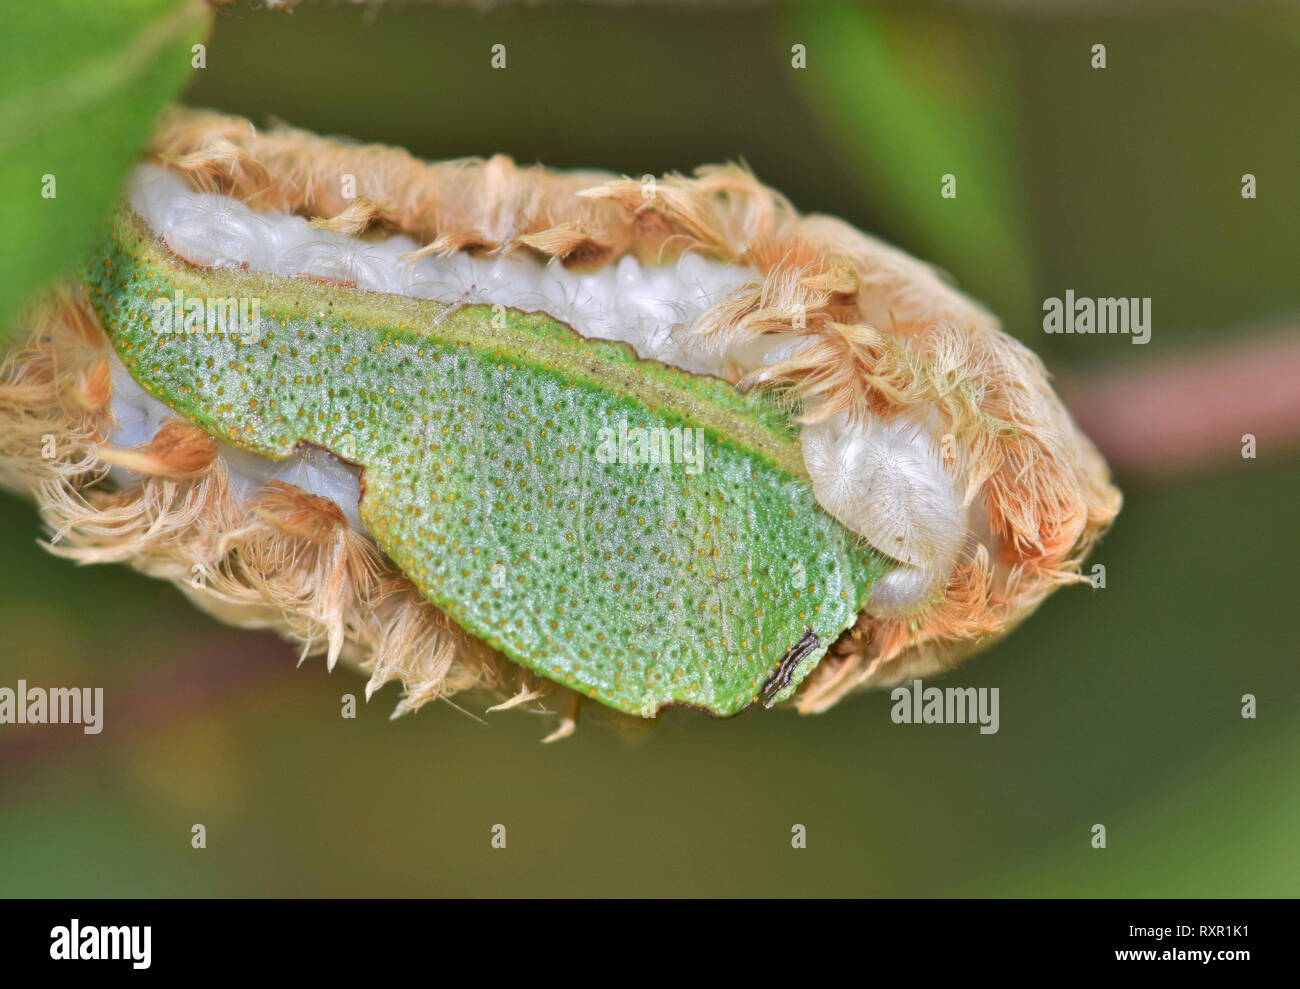 Ein Flanell Motte Caterpillar (Megalopygidae opercularis) Essen einen Baum Blatt und zeigt seine weiche, weiße Unterseite. Diese sind giftige Kreaturen. Stockfoto